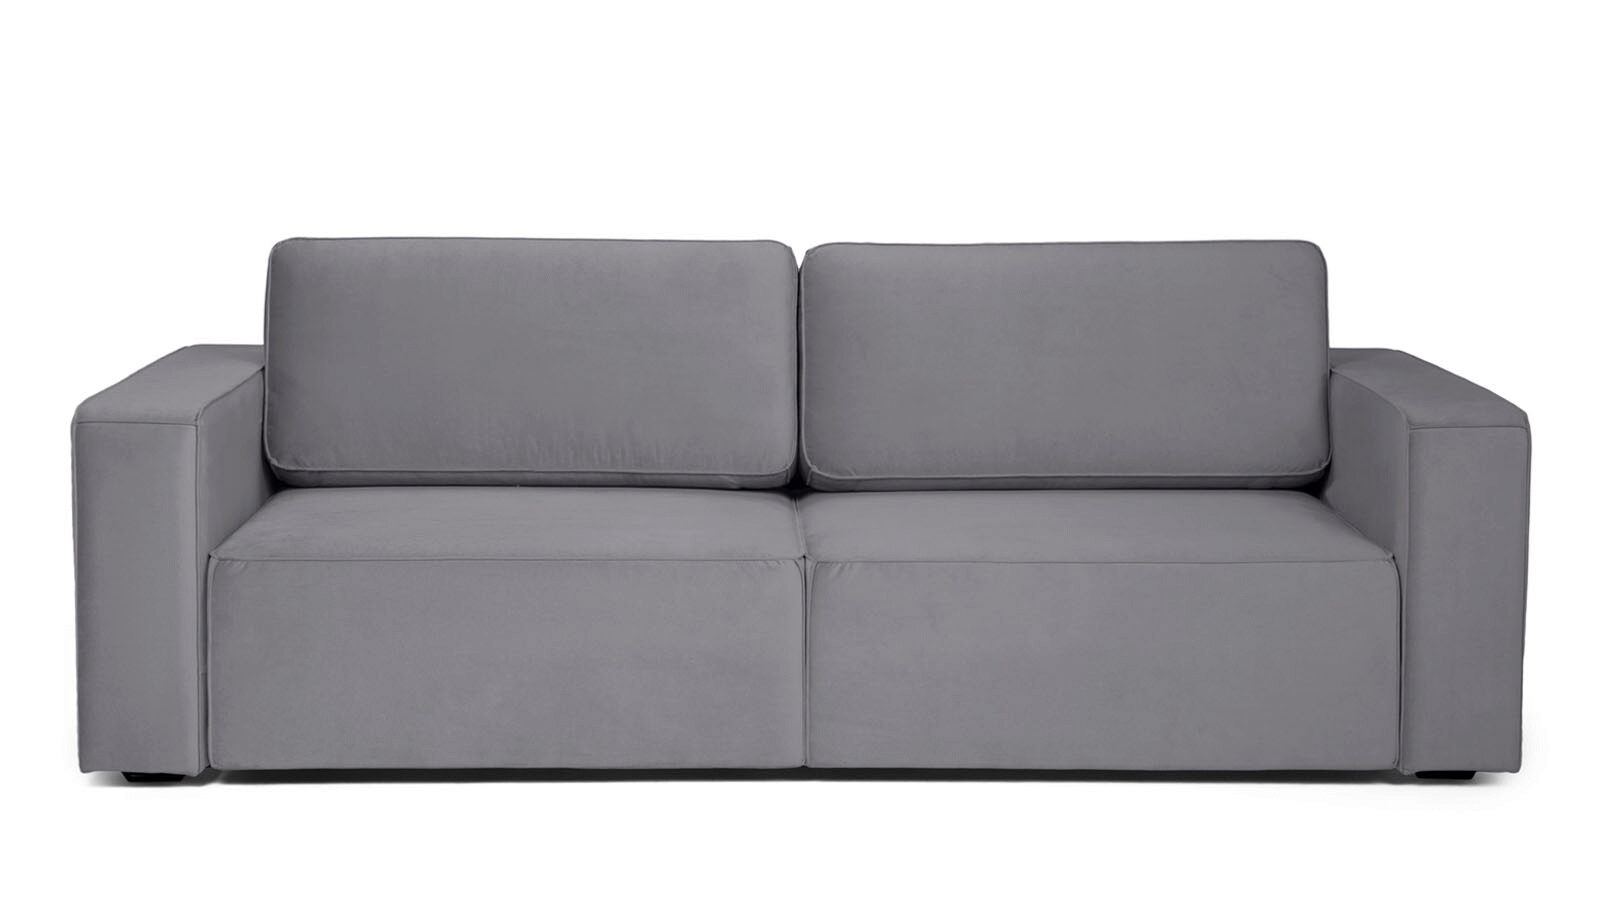 Прямой диван Ralf двухместный, с подлокотниками художественное пространство фильма